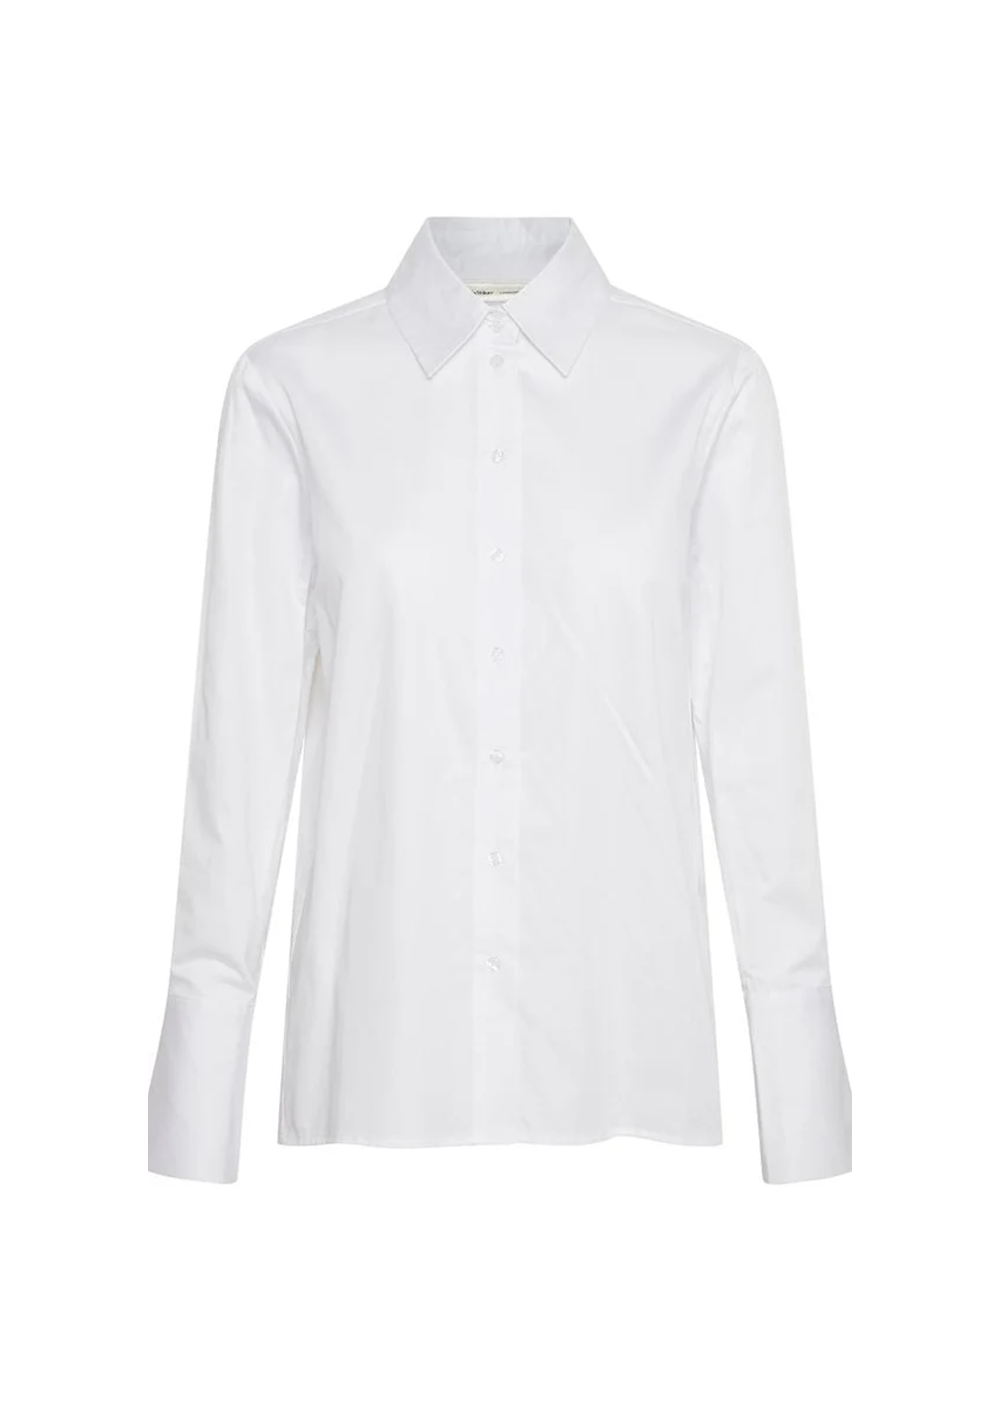 Vex Shirt - White - InWear - Danali - Canada